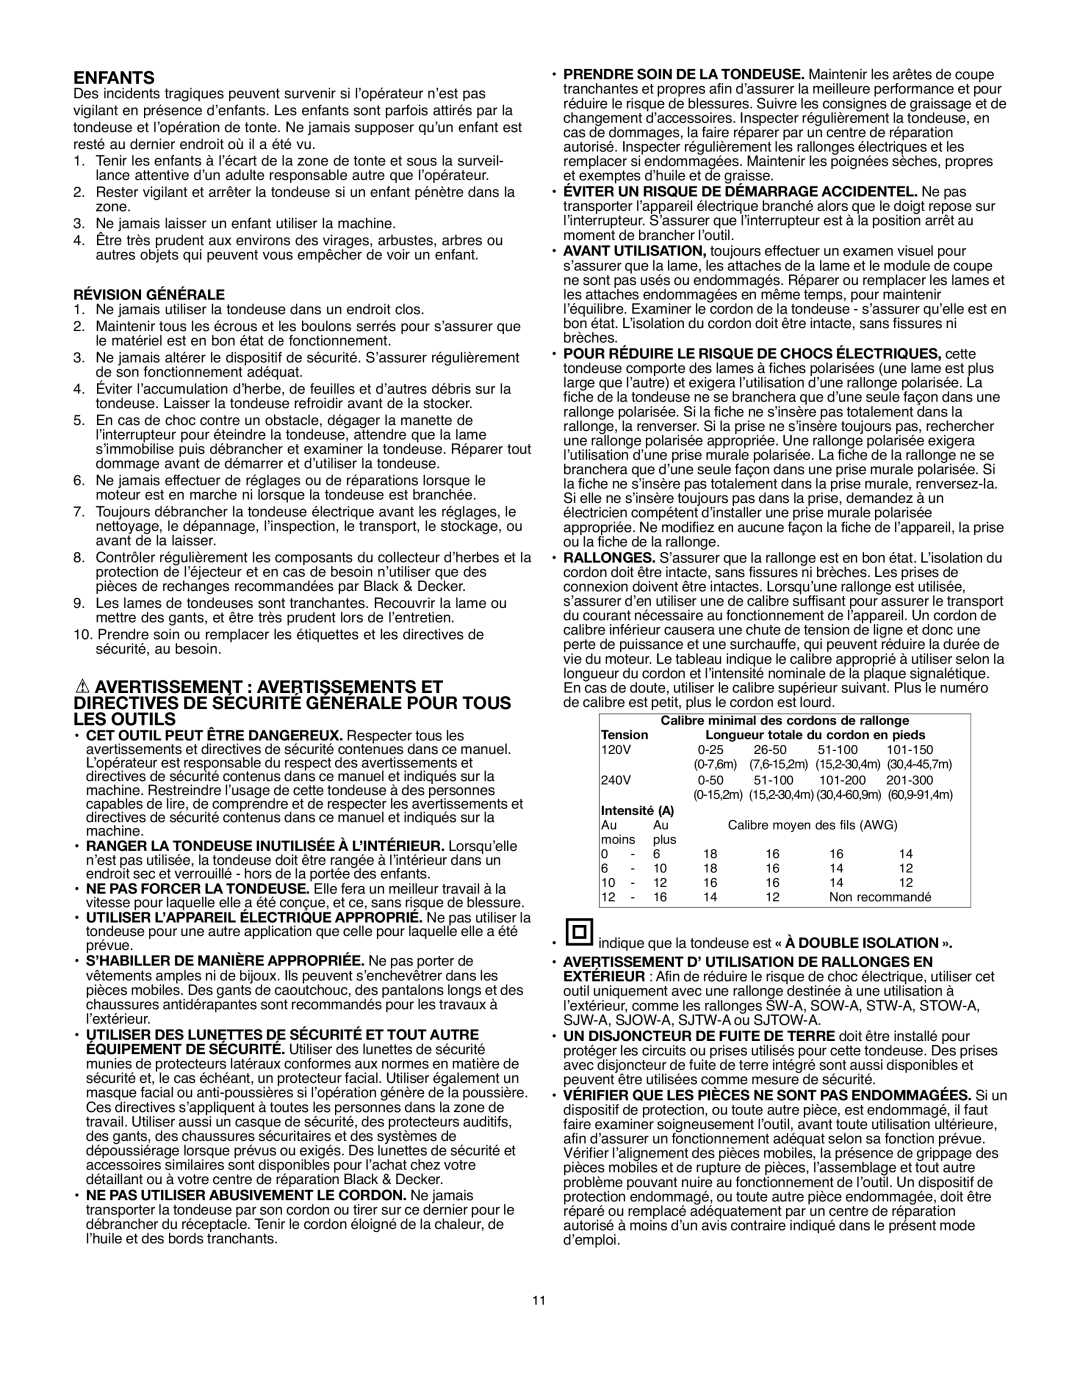 Black & Decker MM875 instruction manual Enfants, Révision Générale 